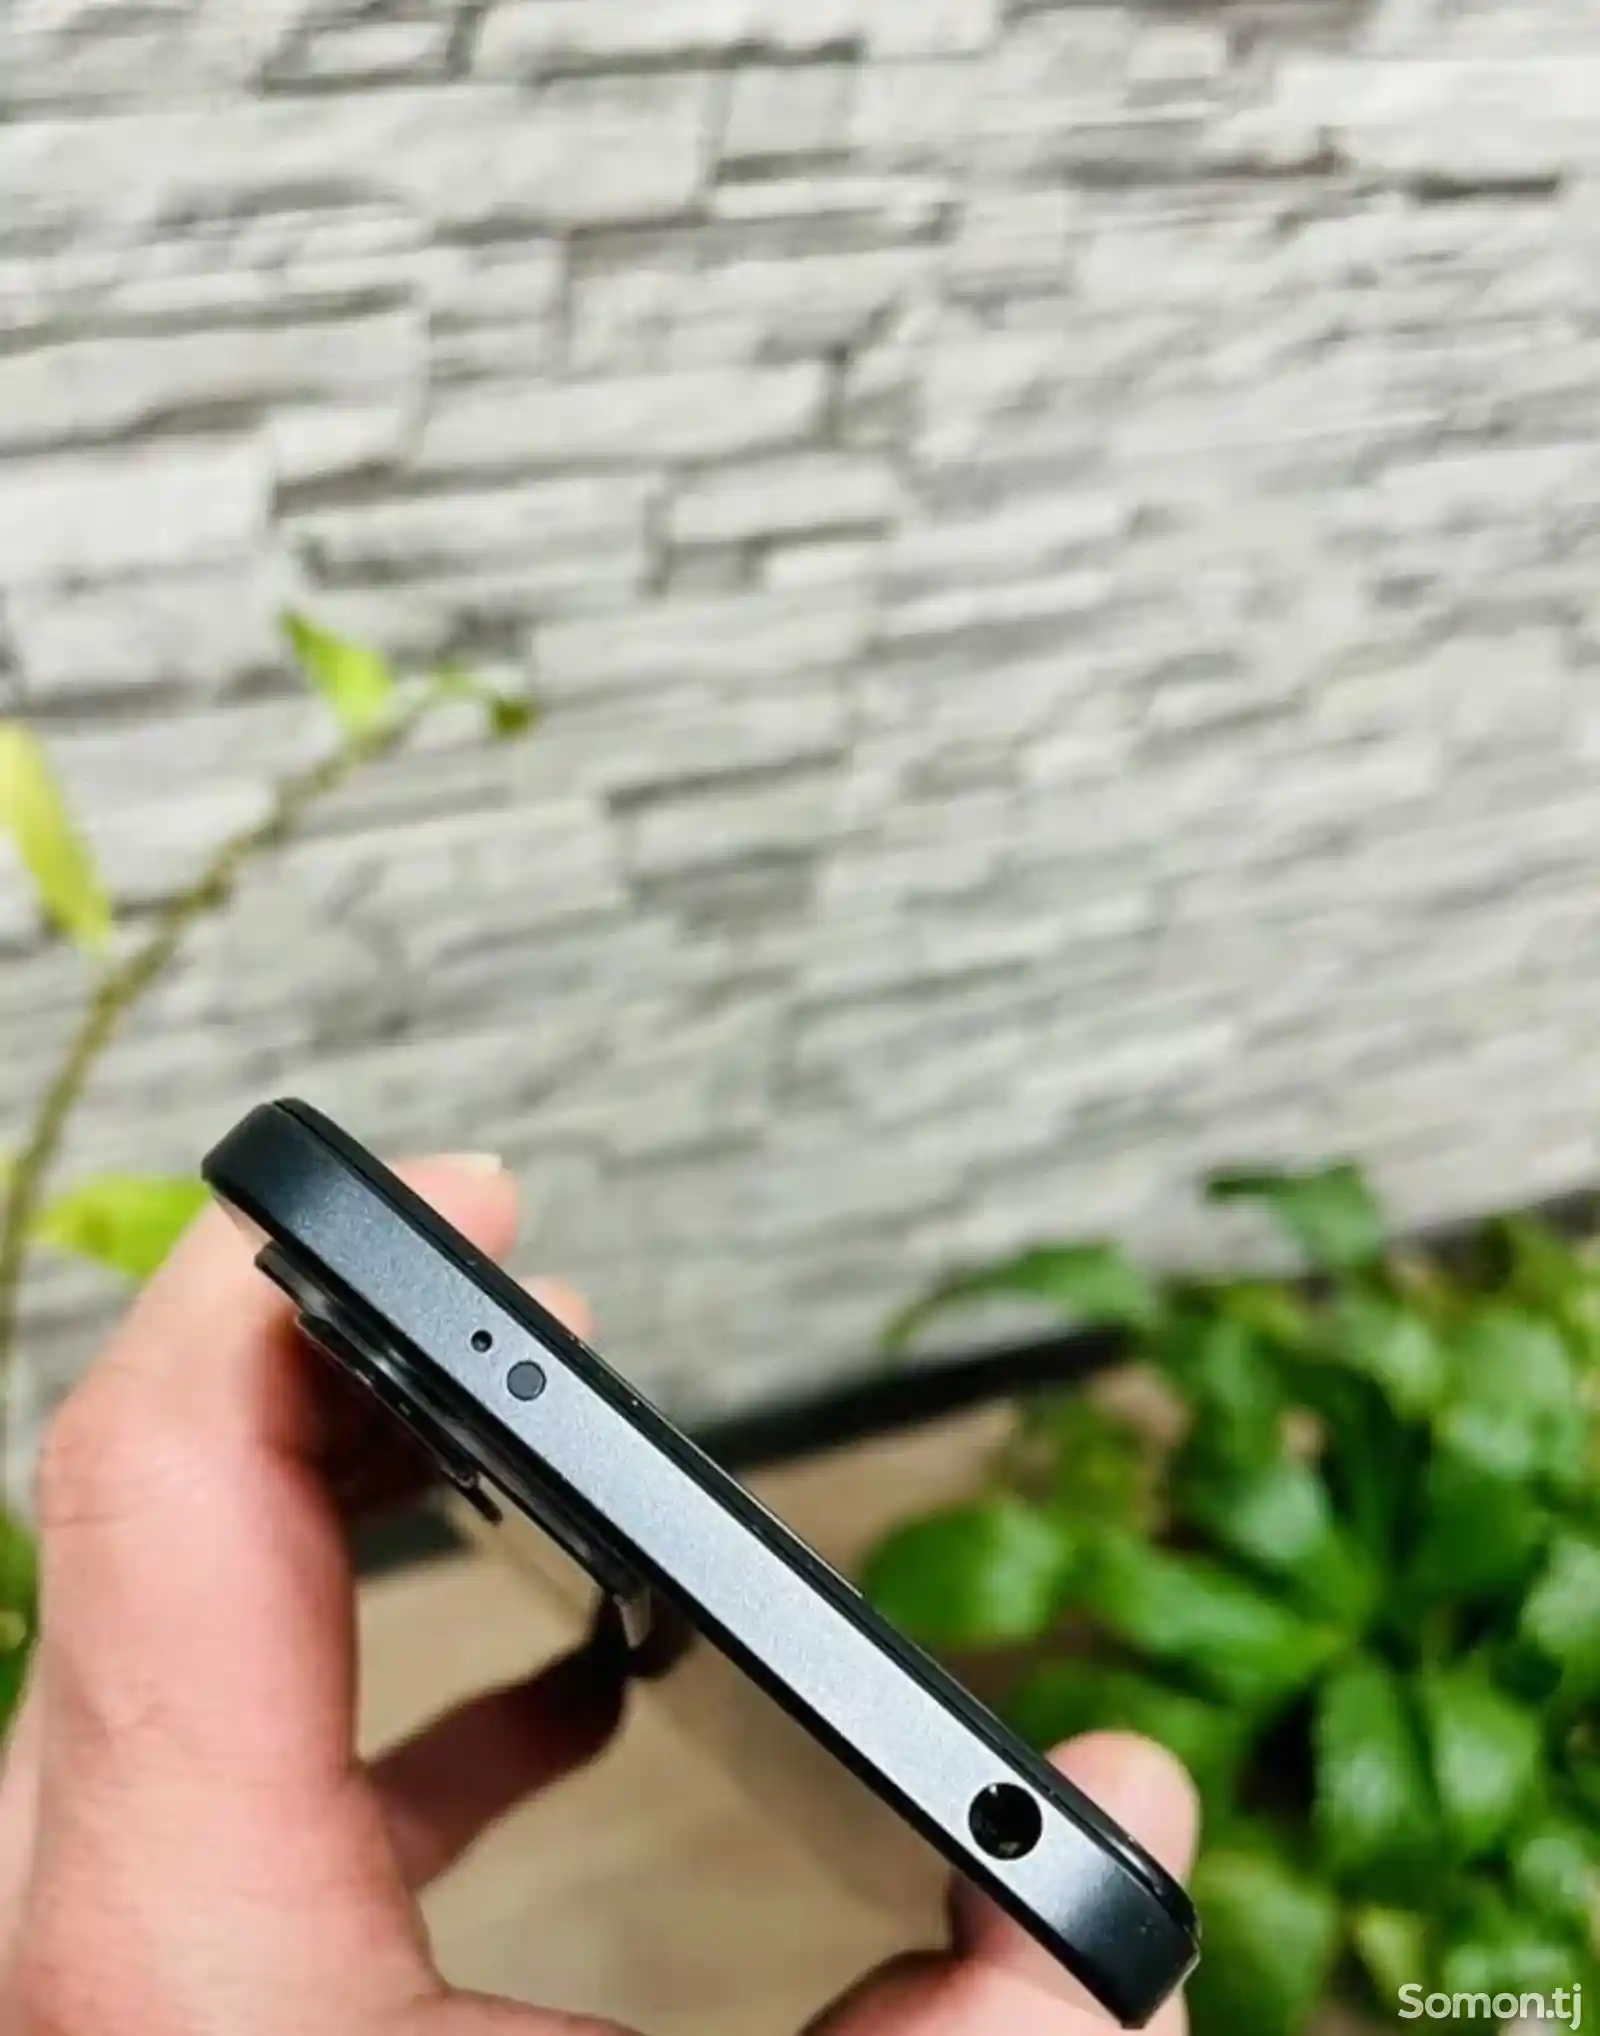 Xiaomi Redmi Note 12 4G-4